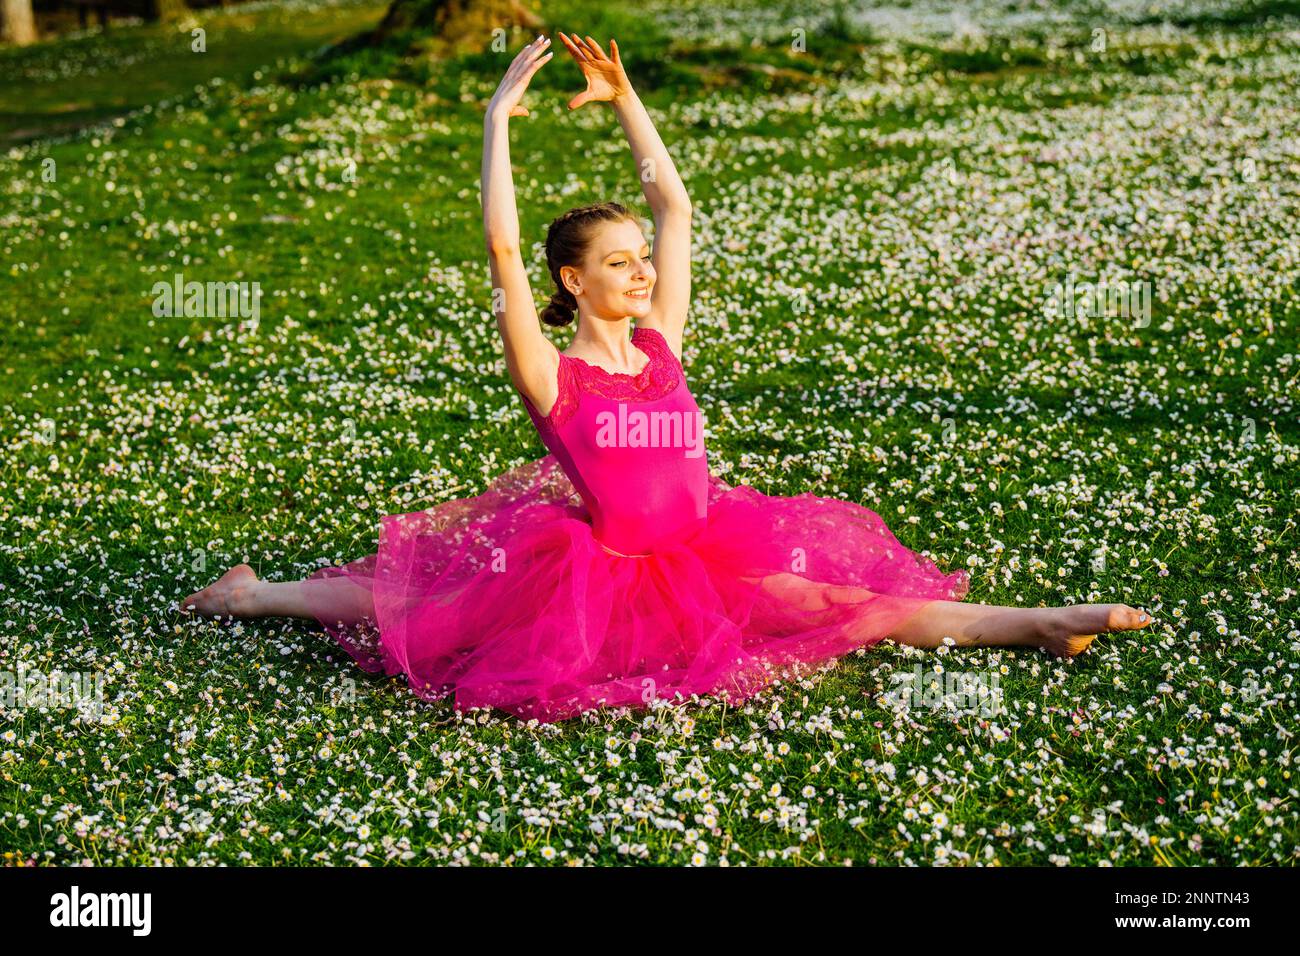 Ballerina, die mit Blumen auf dem Rasen spaltet, Battle Point Park,  Bainbridge Island, Washington, USA Stockfotografie - Alamy